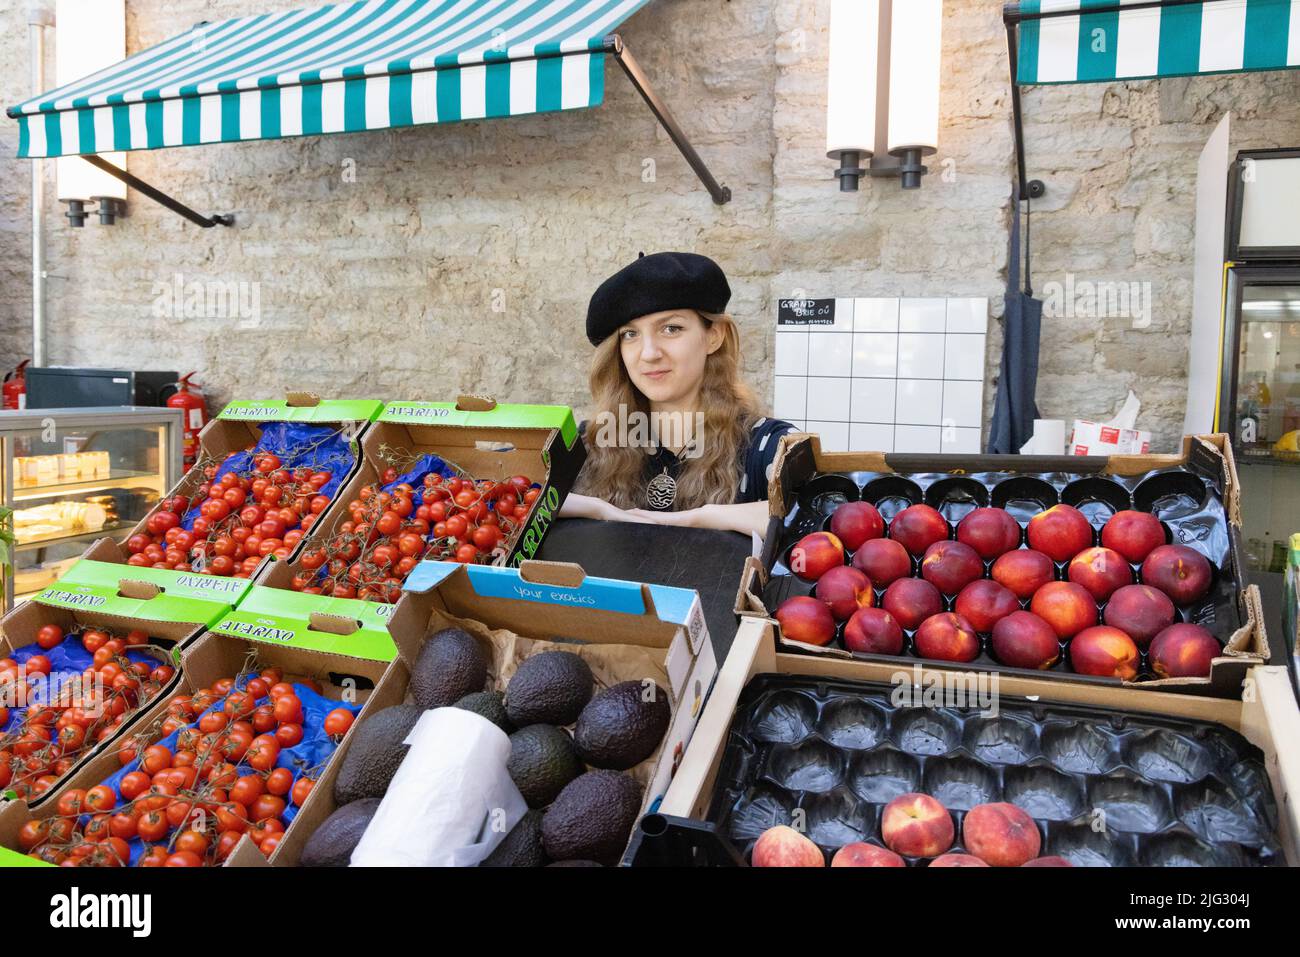 Tallinn Lifestyle; una mujer de 20s años que vende fruta en su puesto de comida, el mercado Balti Jaam, un gran mercado interior, Tallinn Estonia Europa Foto de stock